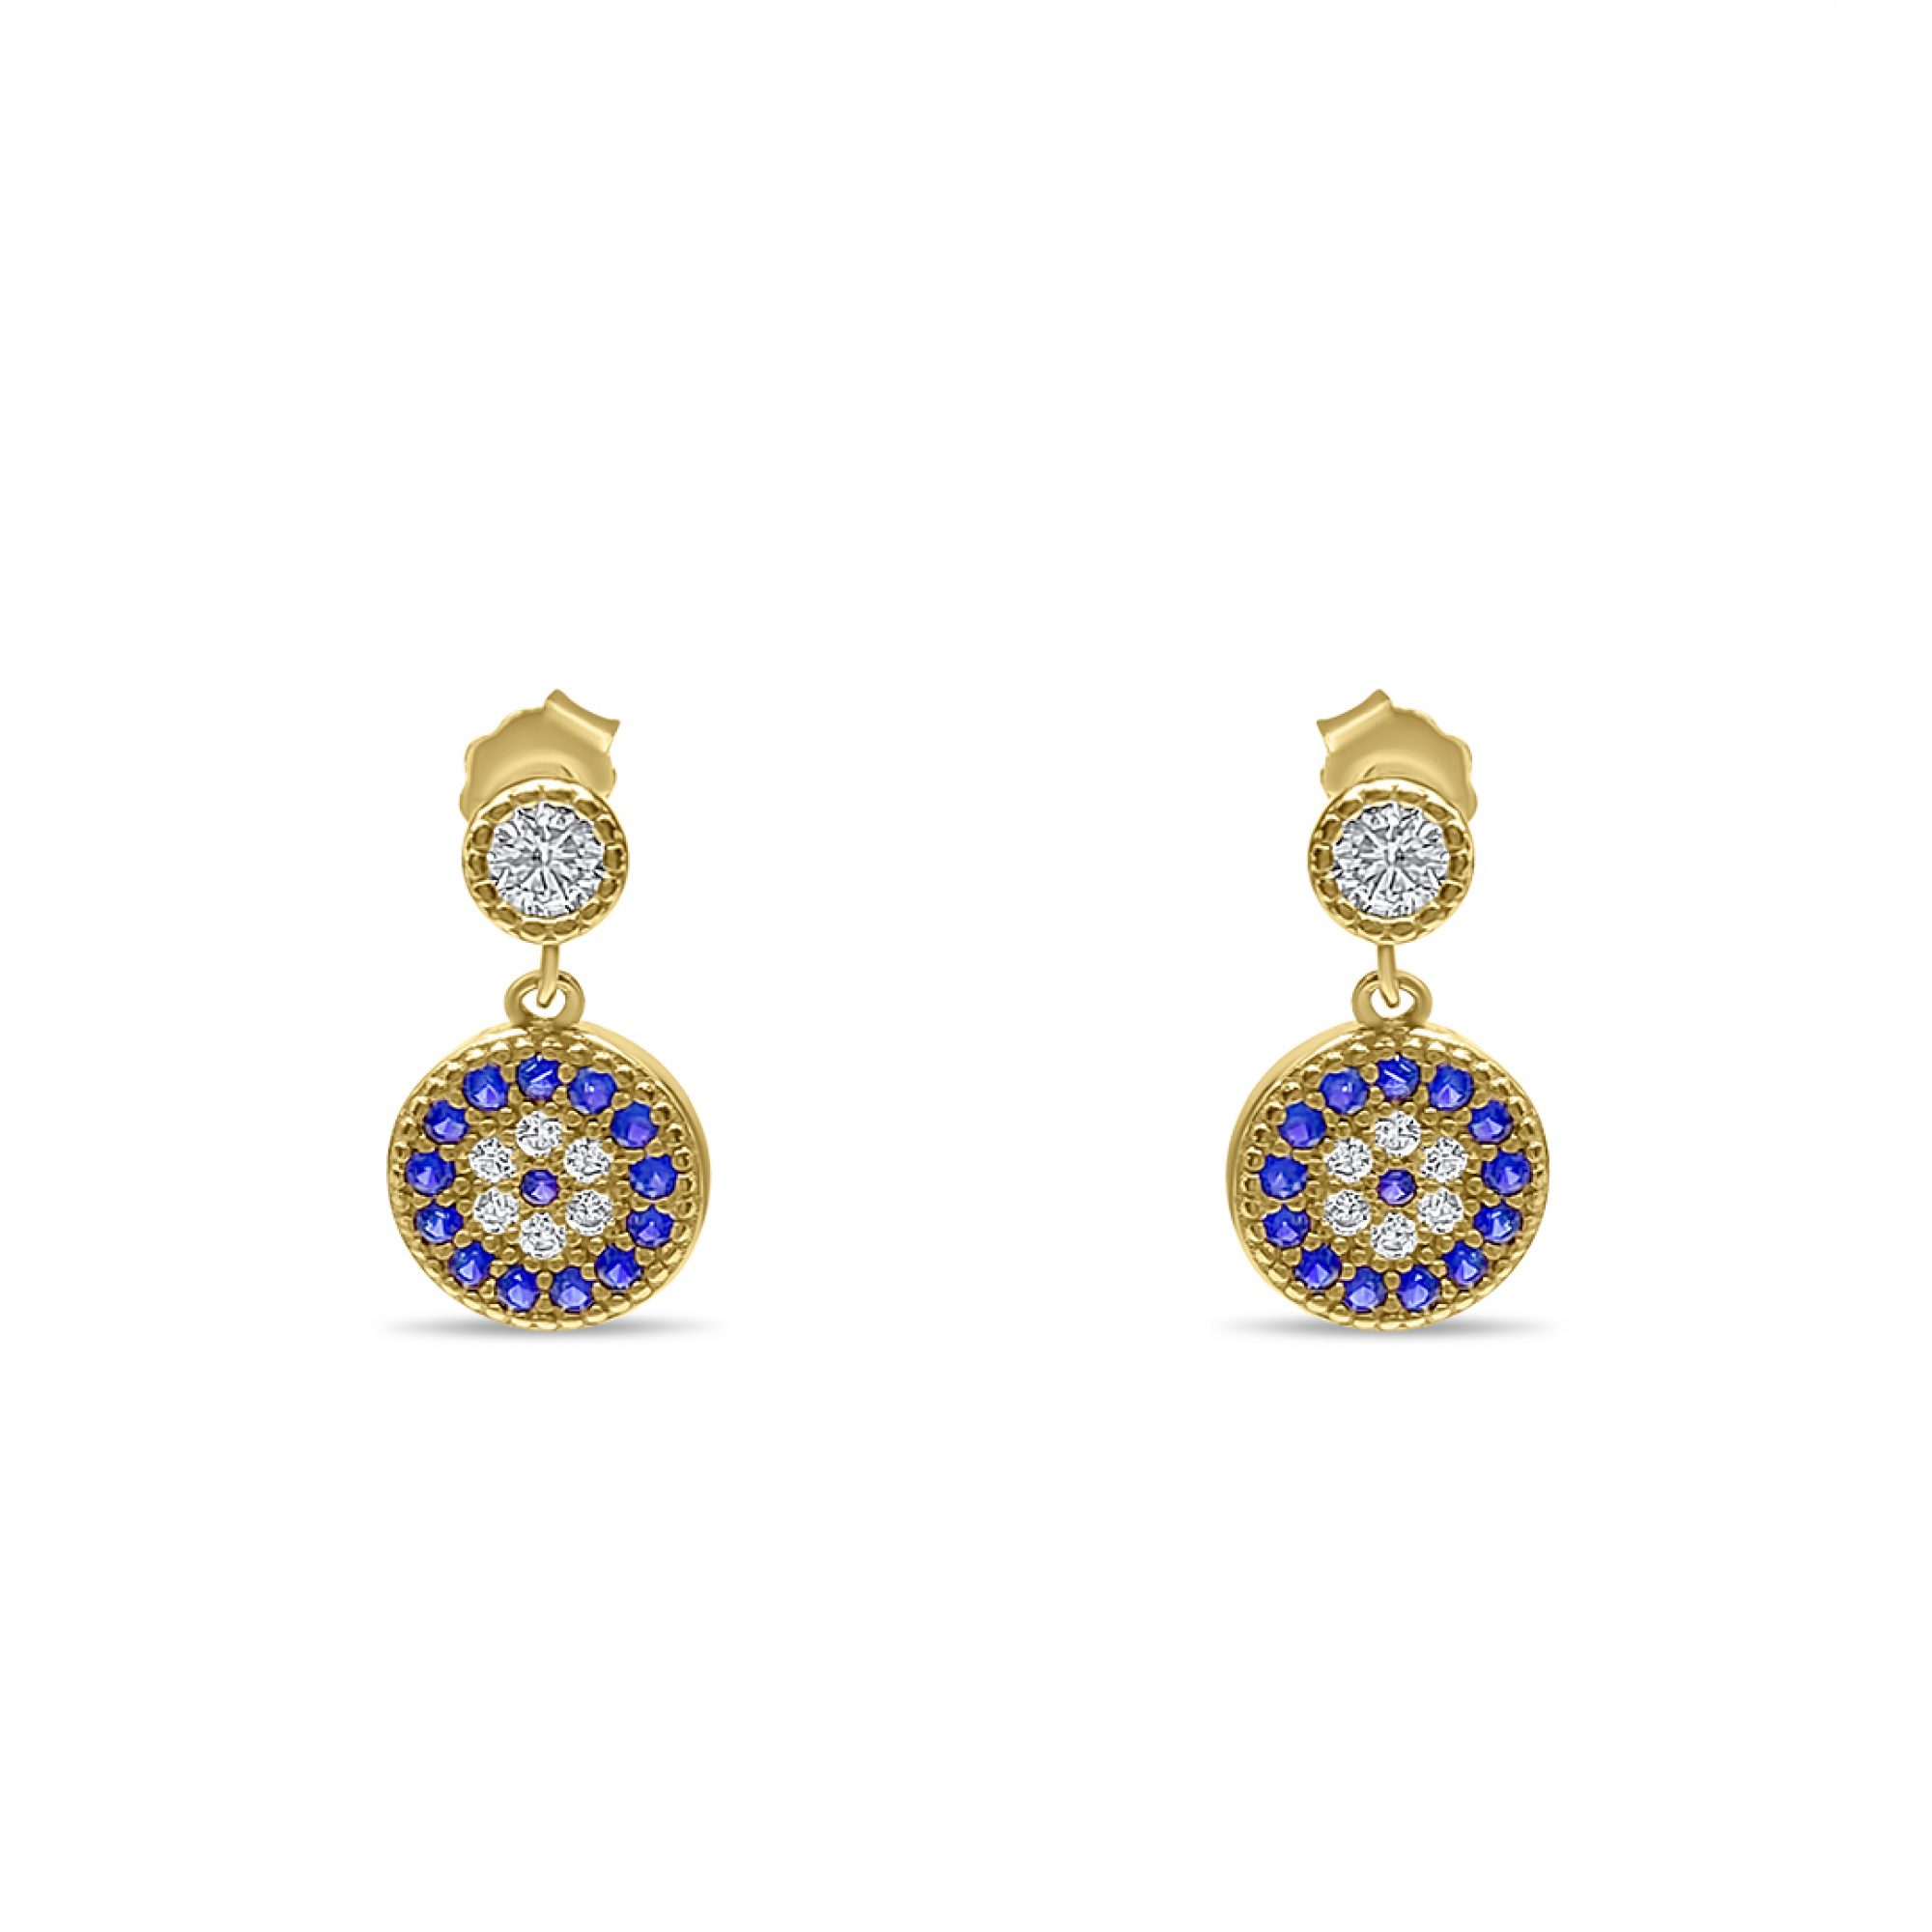 Gold plated eye stud earrings with zircon stones